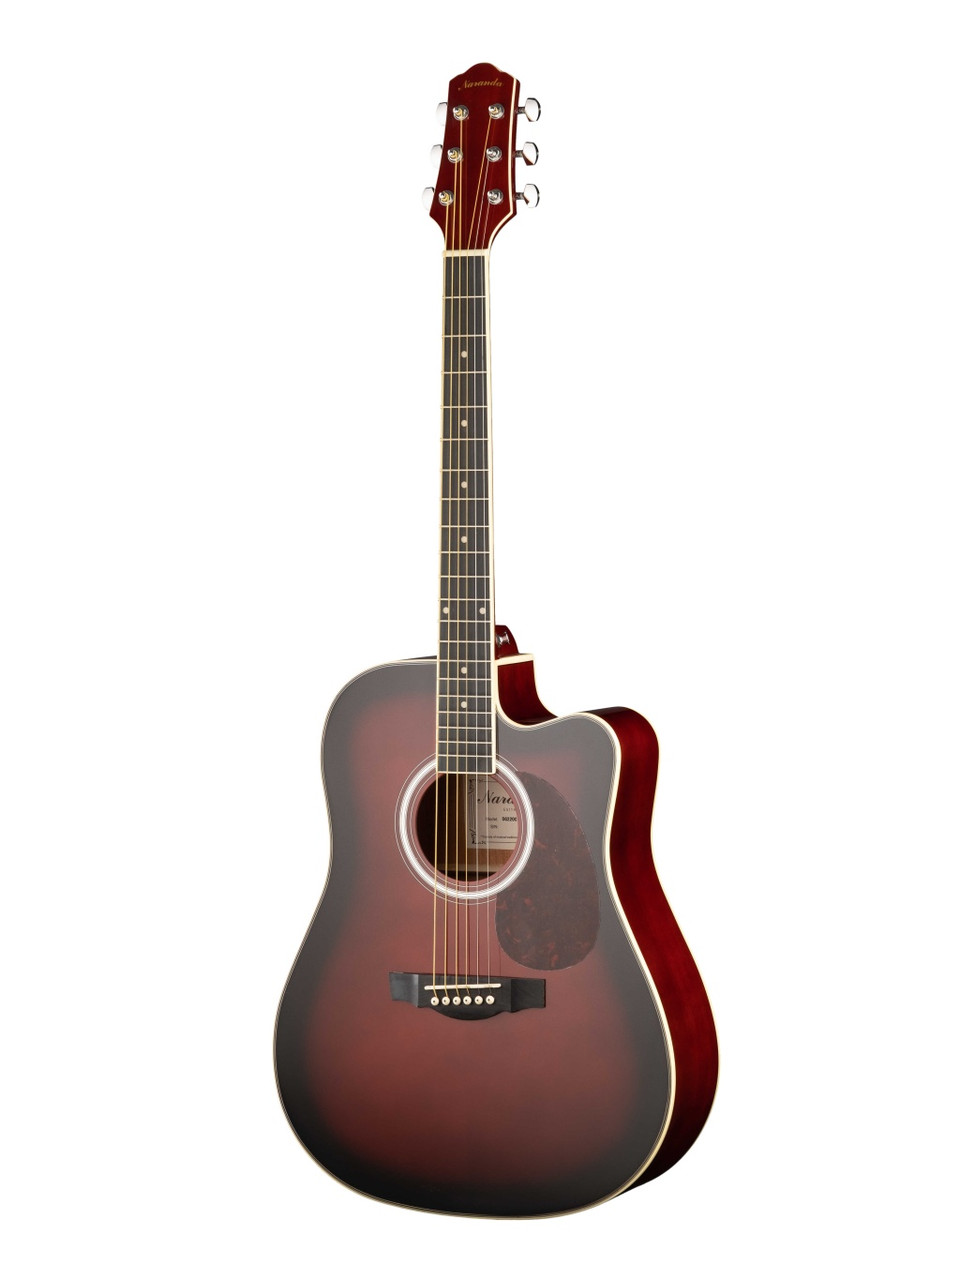 Акустическая гитара с вырезом Naranda DG220CWRS